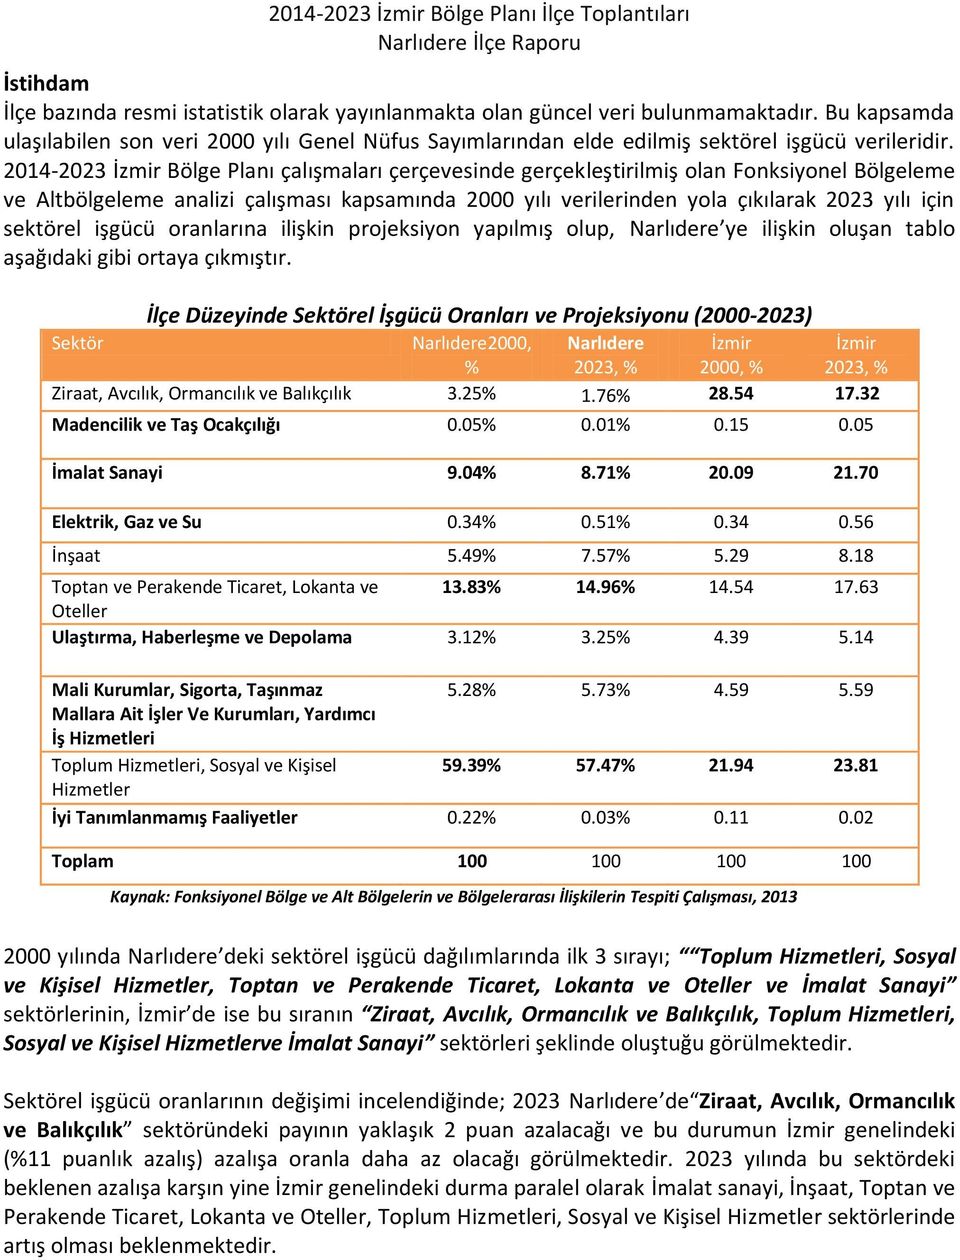 2014-2023 İzmir Bölge Planı çalışmaları çerçevesinde gerçekleştirilmiş olan Fonksiyonel Bölgeleme ve Altbölgeleme analizi çalışması kapsamında 2000 yılı verilerinden yola çıkılarak 2023 yılı için